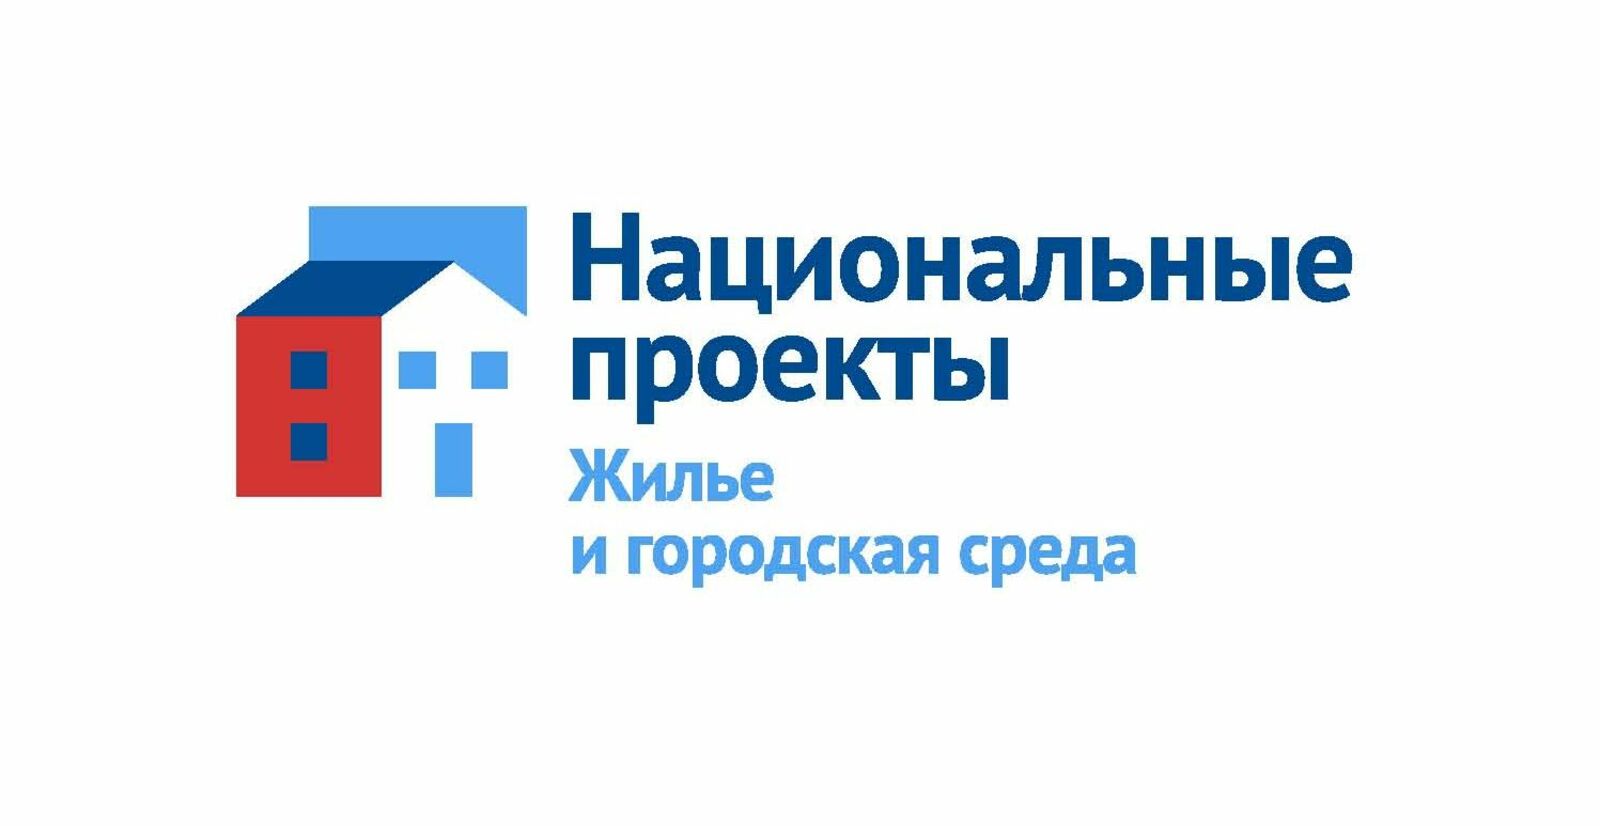 В Башкортостане появится электронный атлас вторичных ресурсов для строительной отрасли